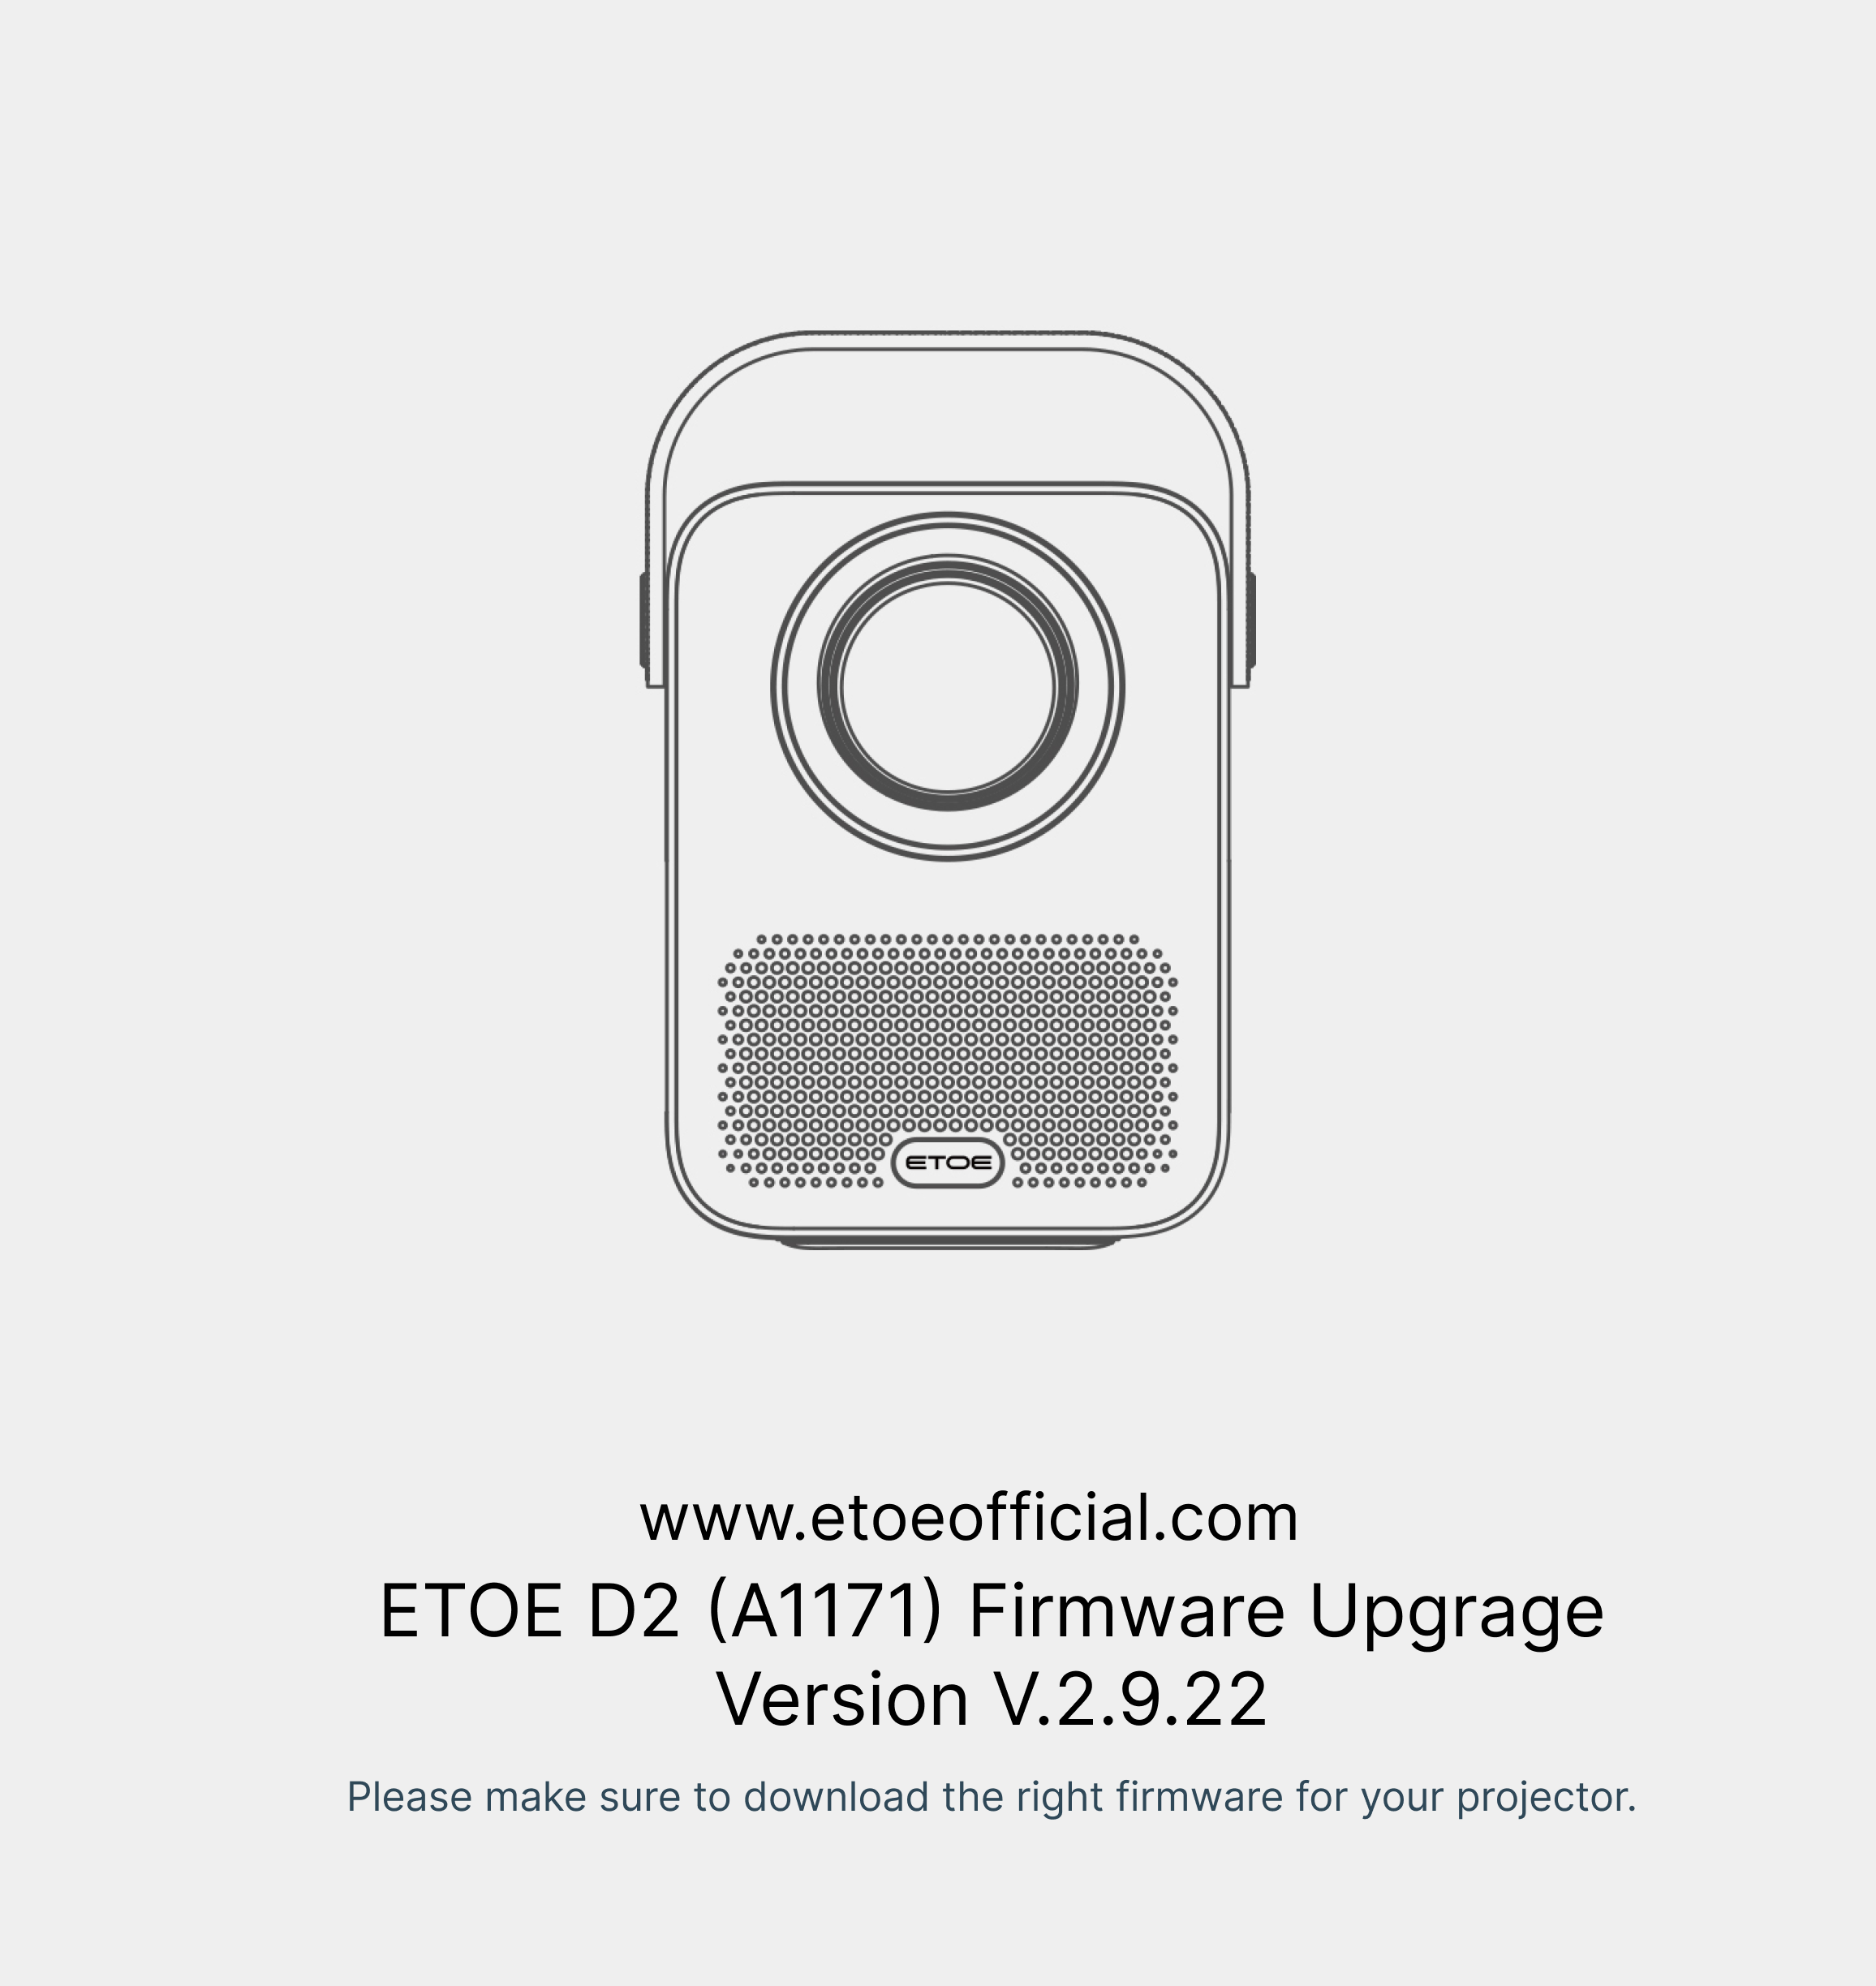 ETOE D2 (A1171) Firmware V.2.9.22 versión rar